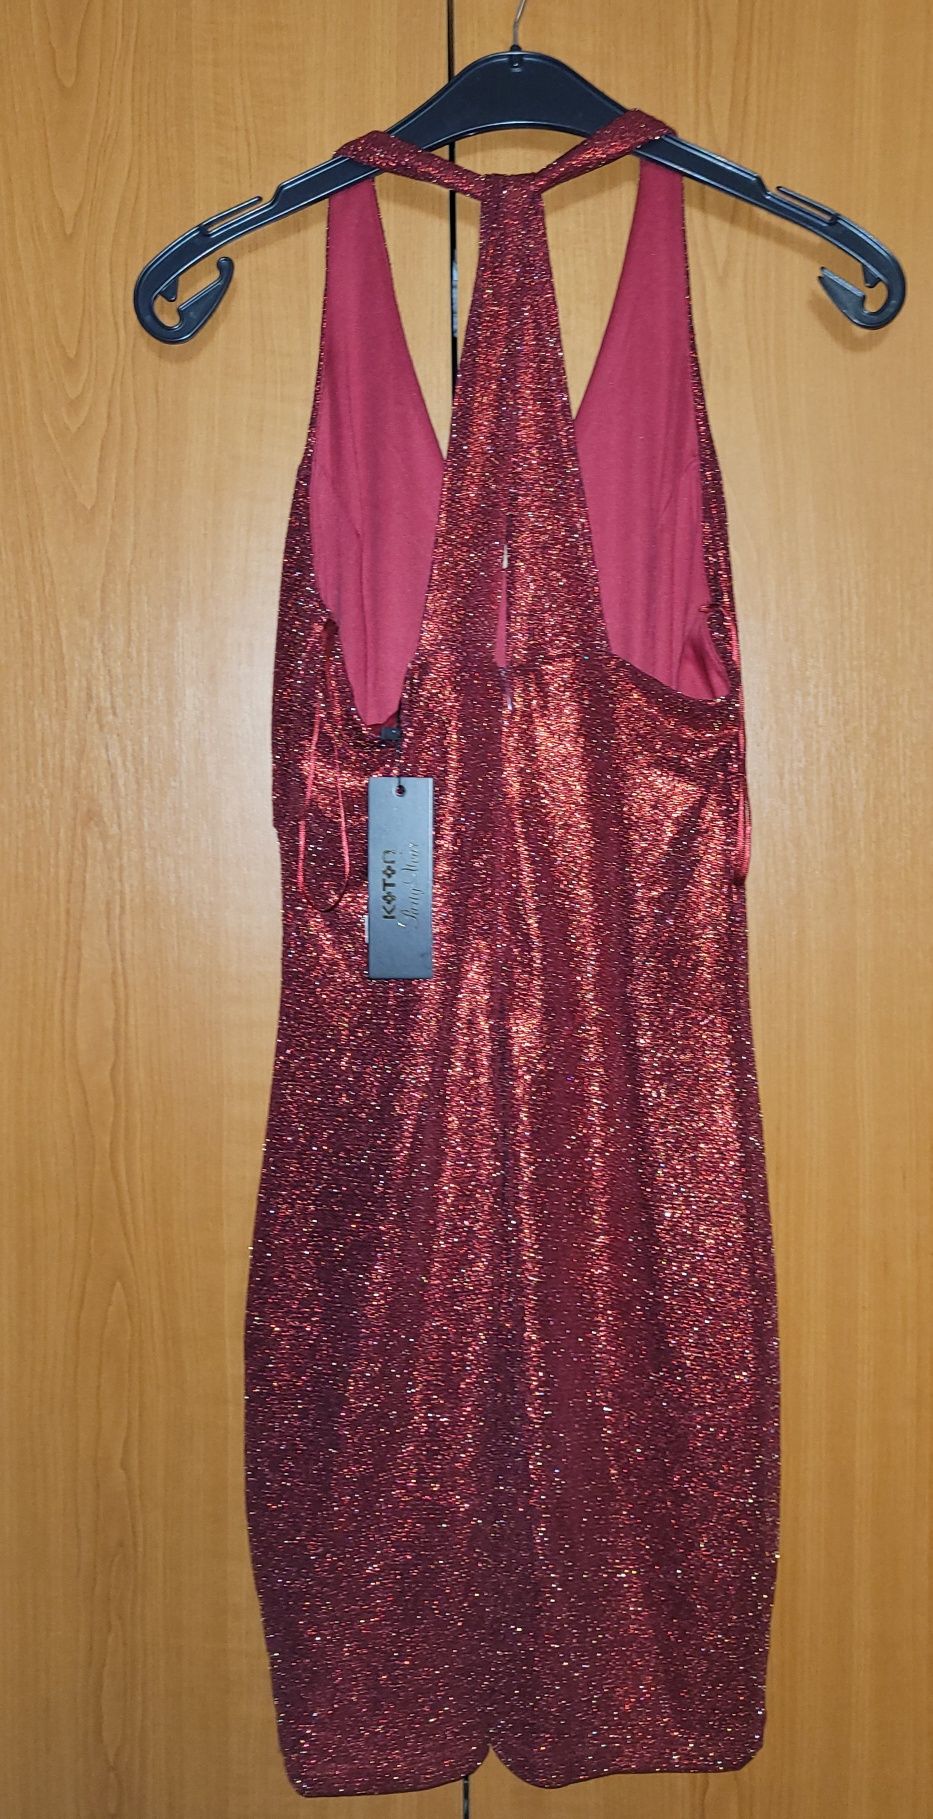 Rochie roșie cu sclipici Koton mărimea M